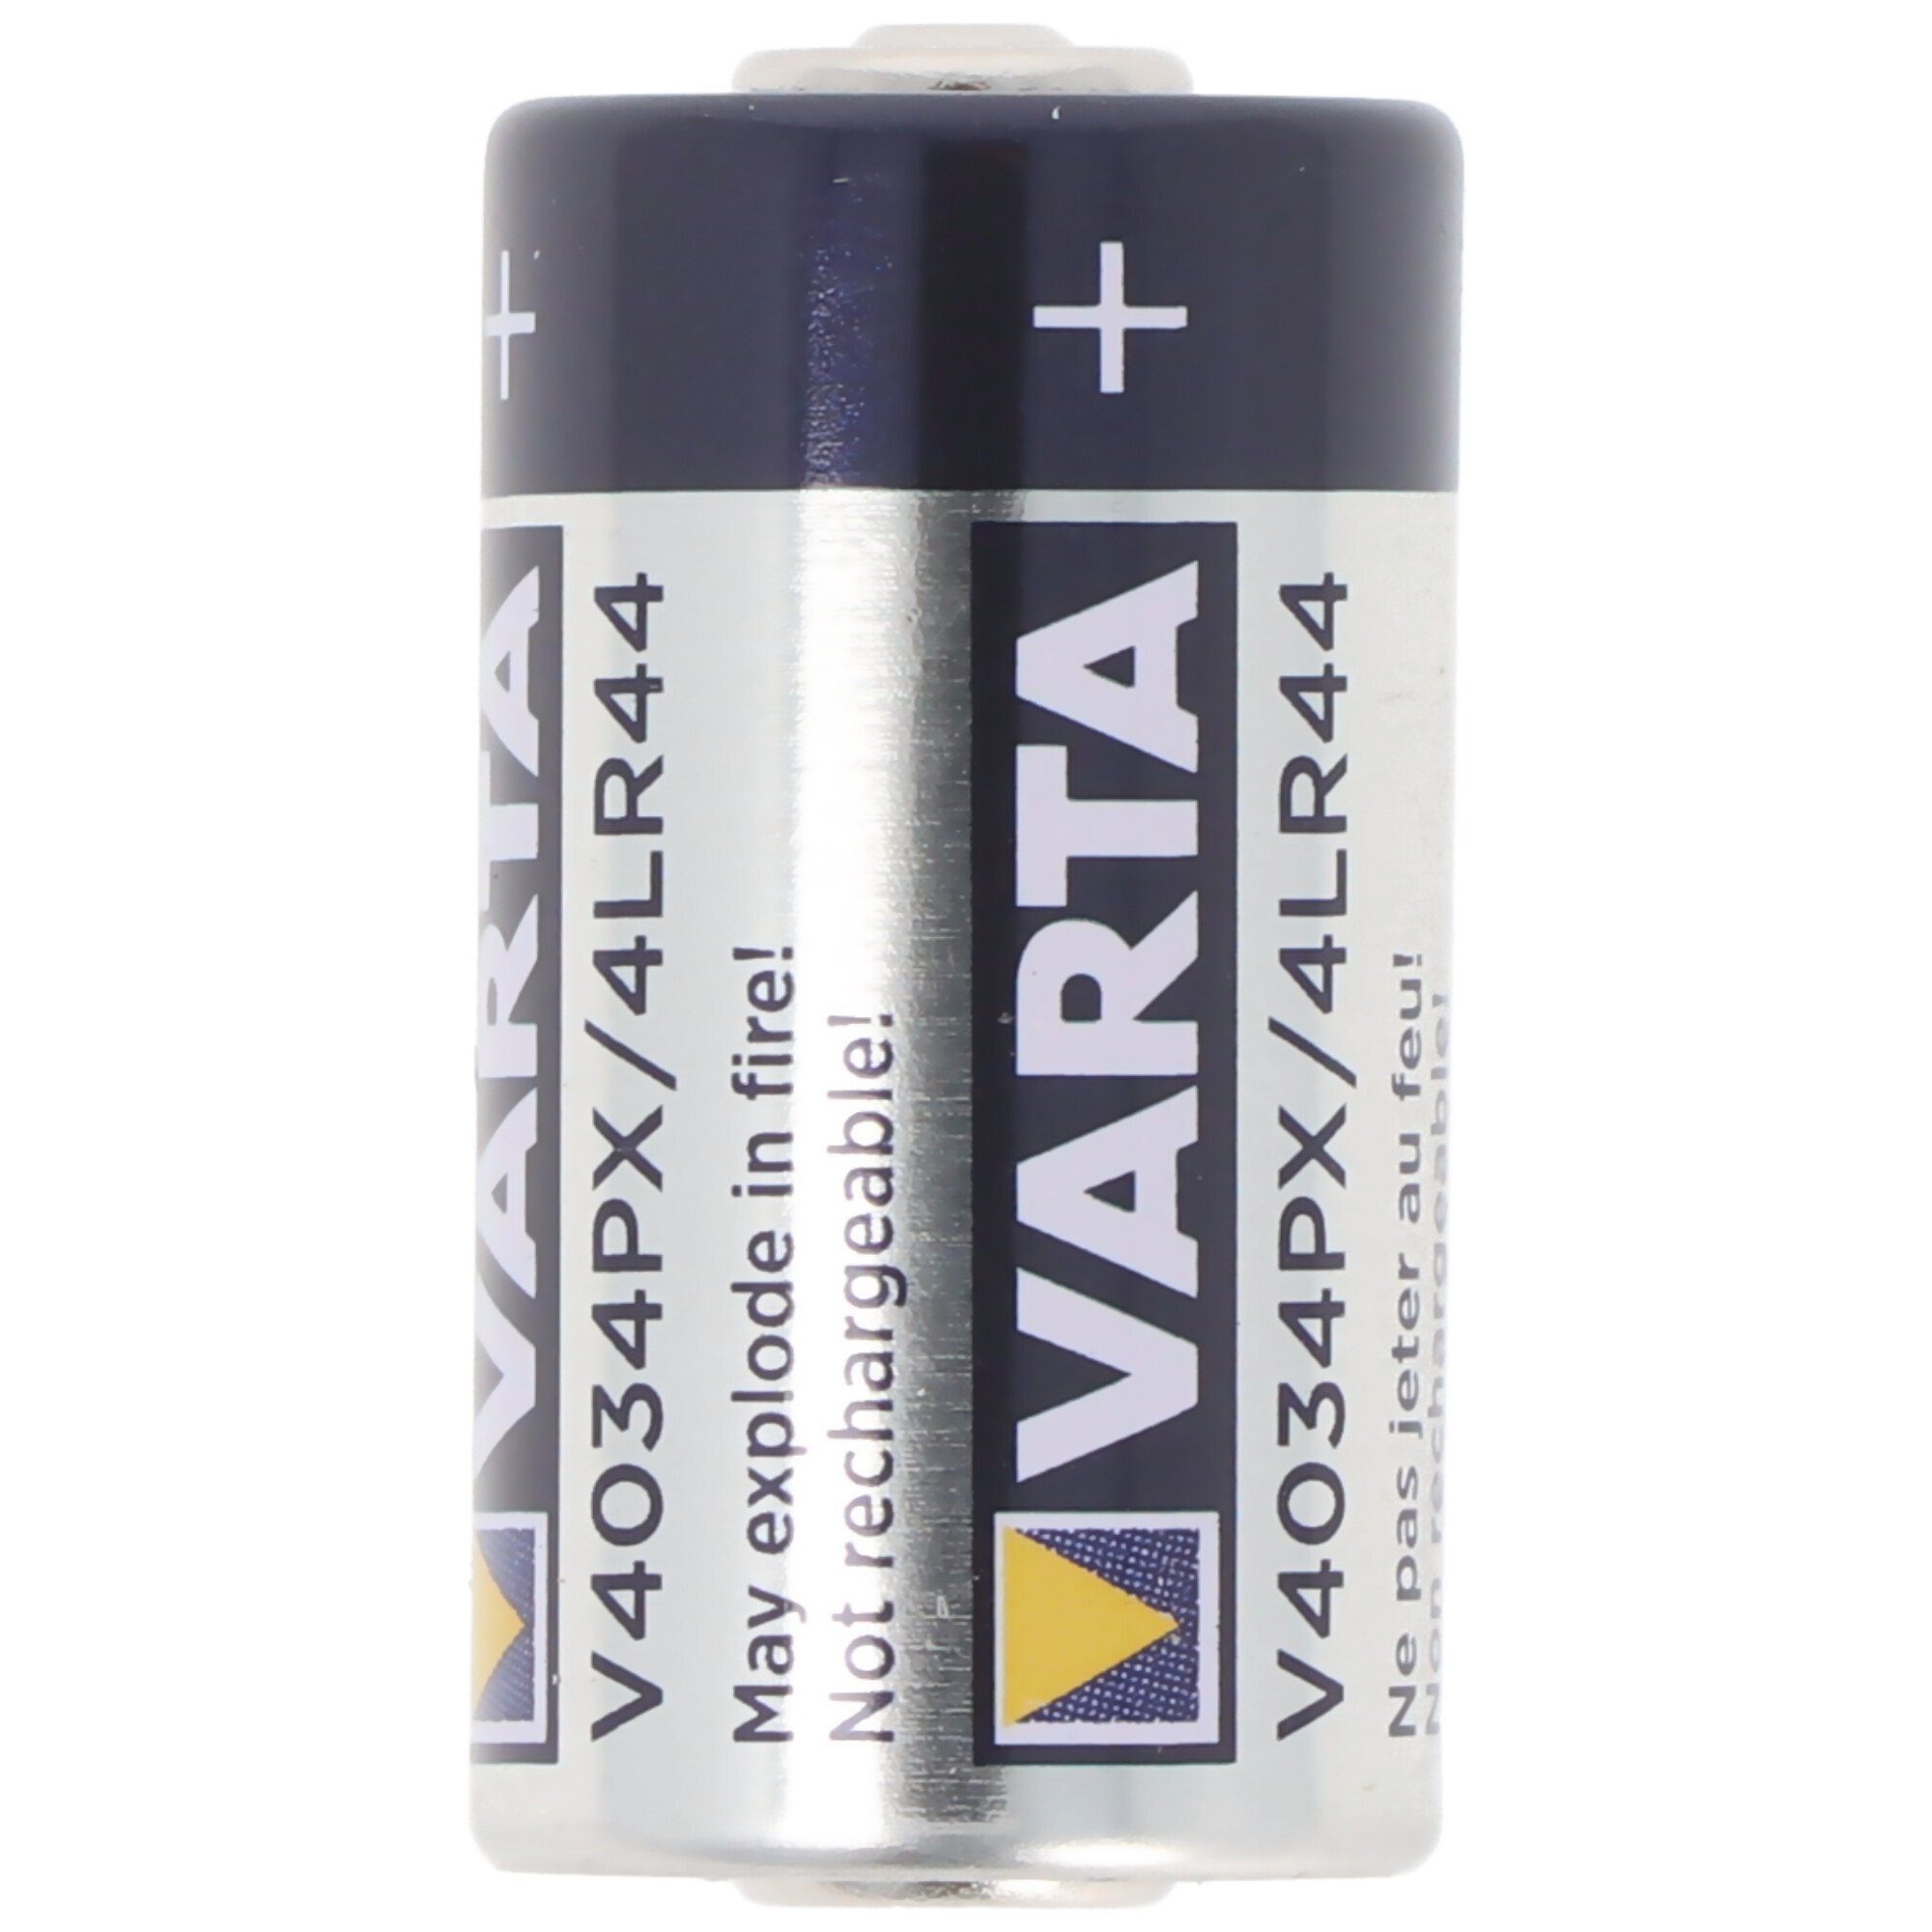 Photo-Batterie Varta 4LR44, (6,0 V) K28A PX28A, Fotobatterie, VARTA V4034, A544,